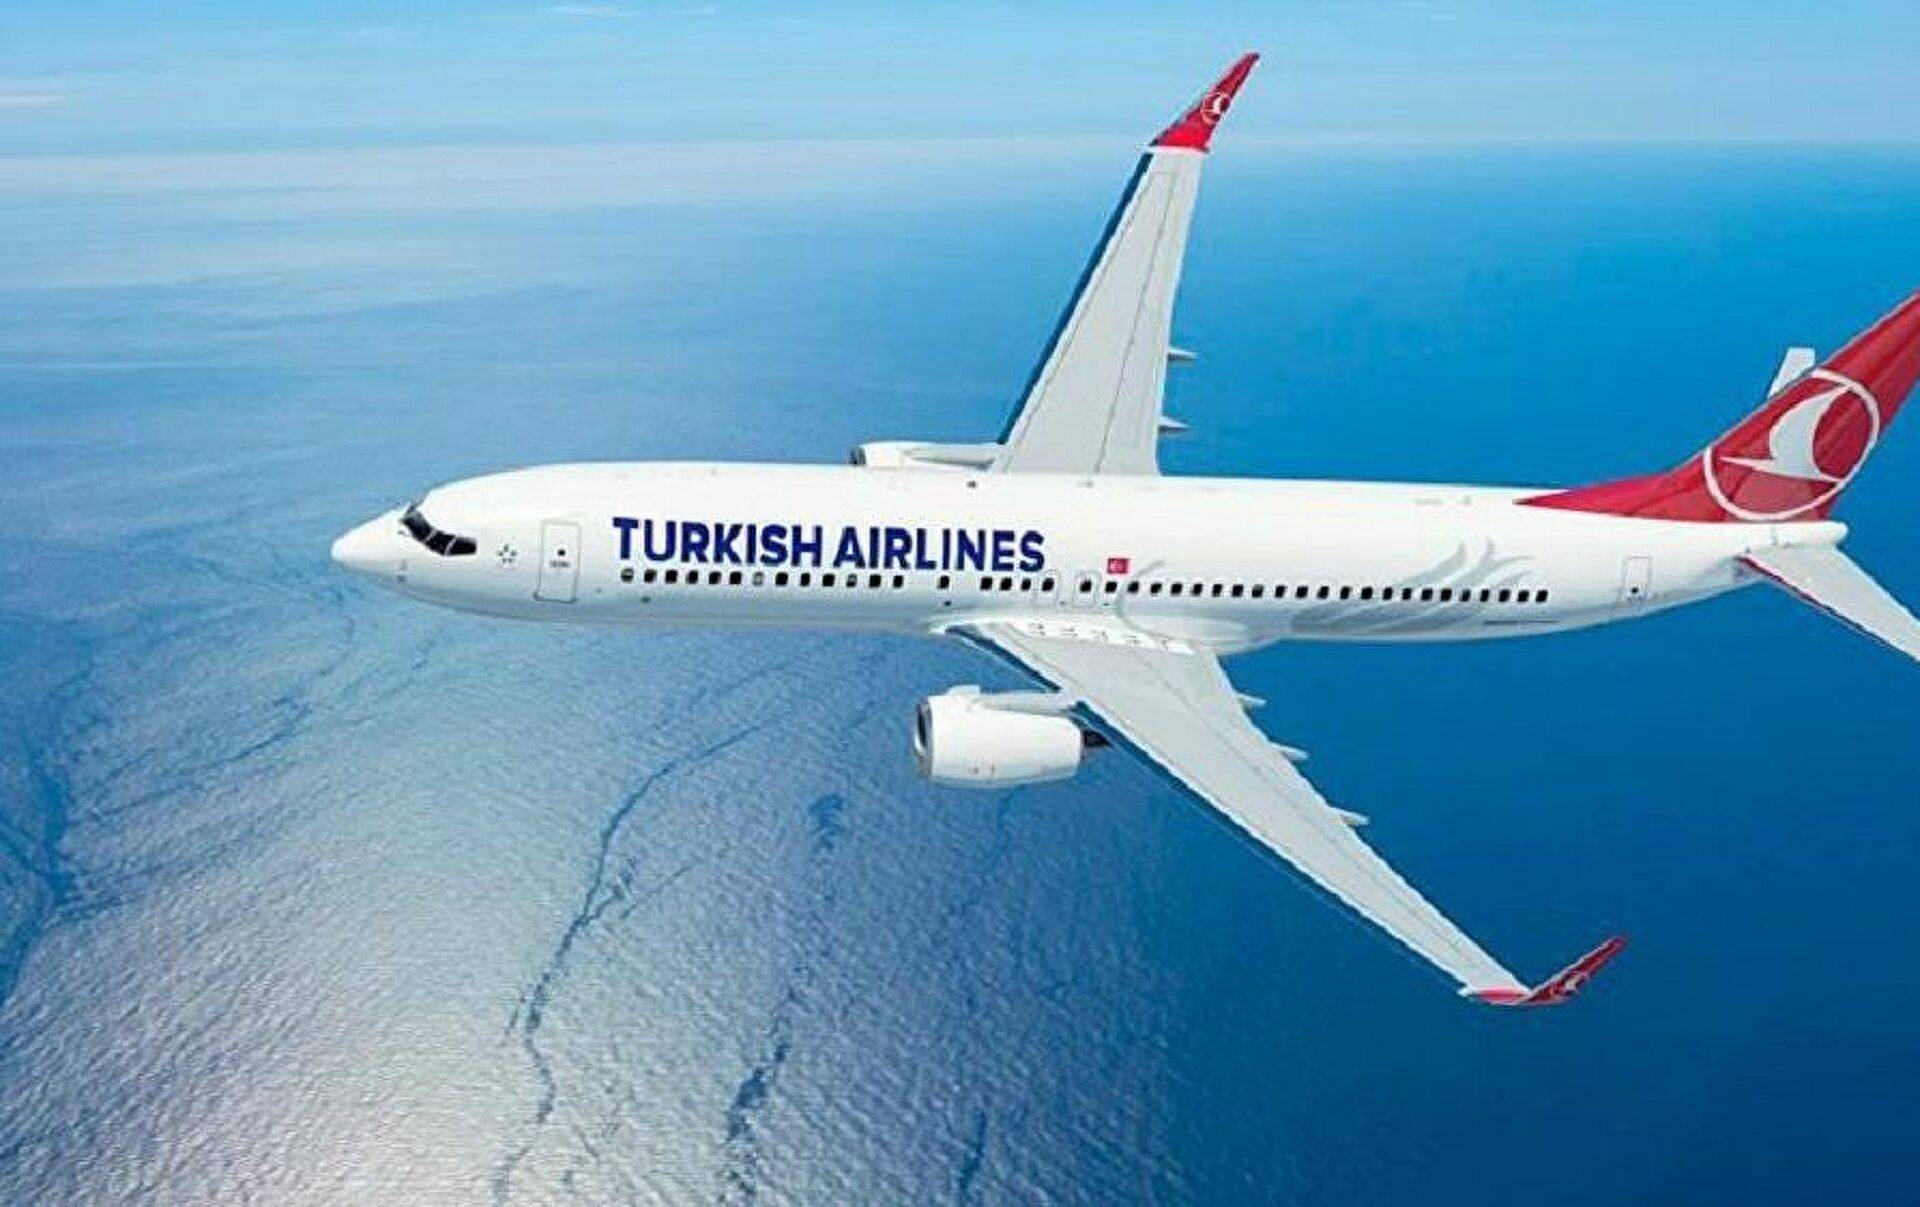 Авиакомпания turkish airlines — все аварии и катастрофы – советы авиатуристам